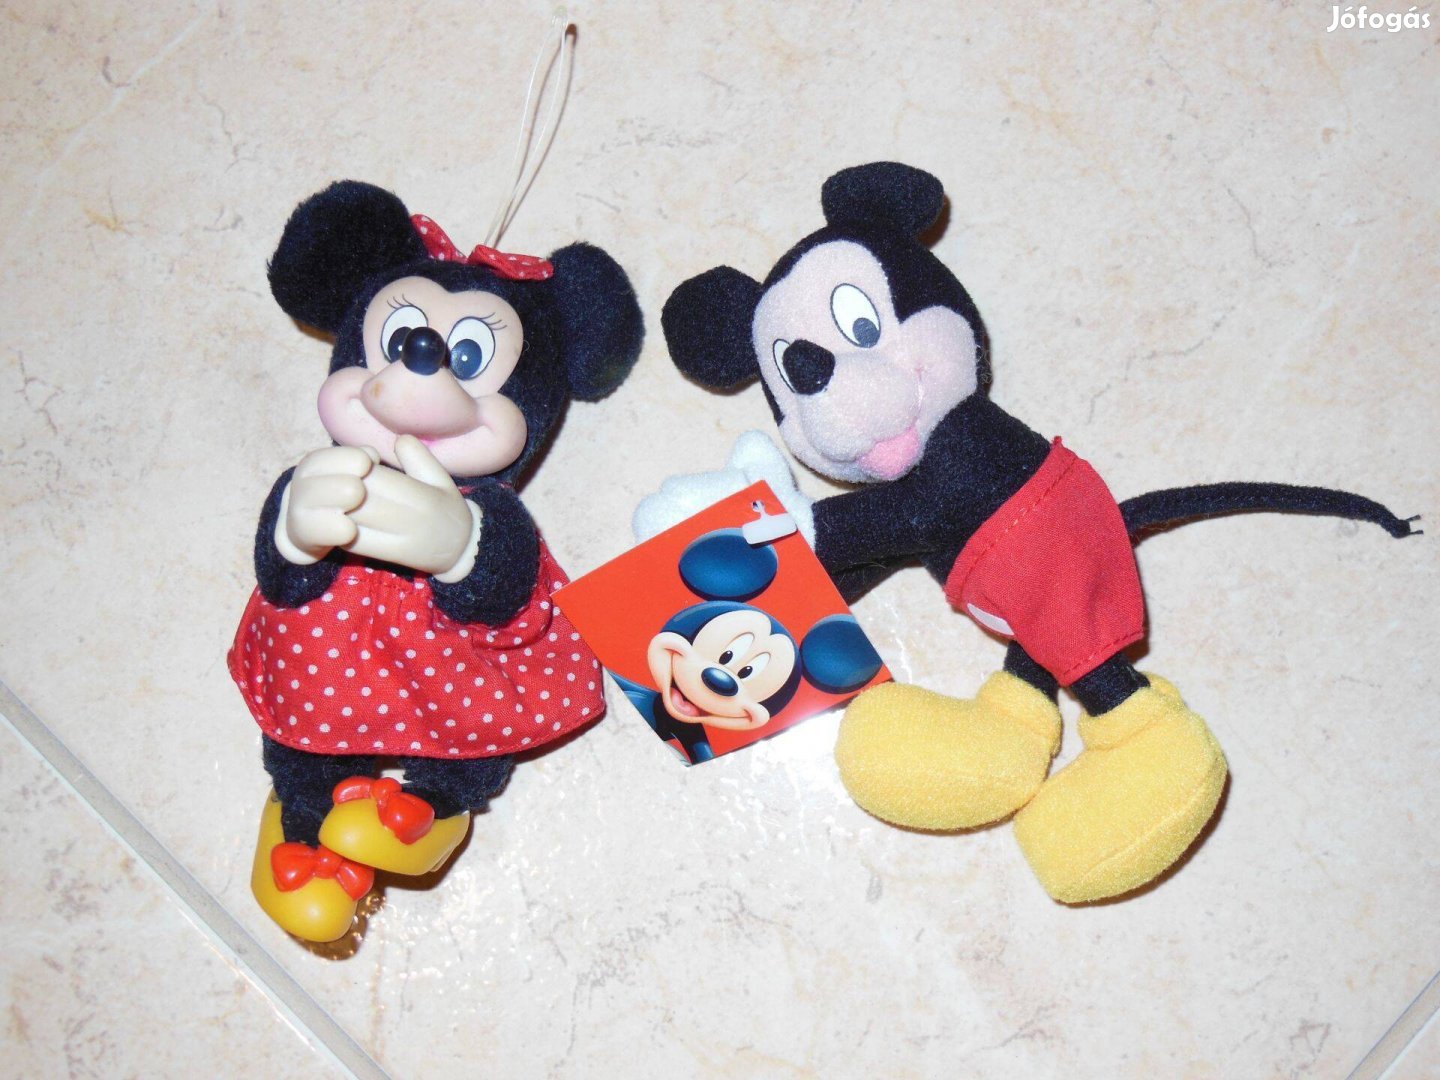 Mickey és Minnie egér plüss figura. 2 db